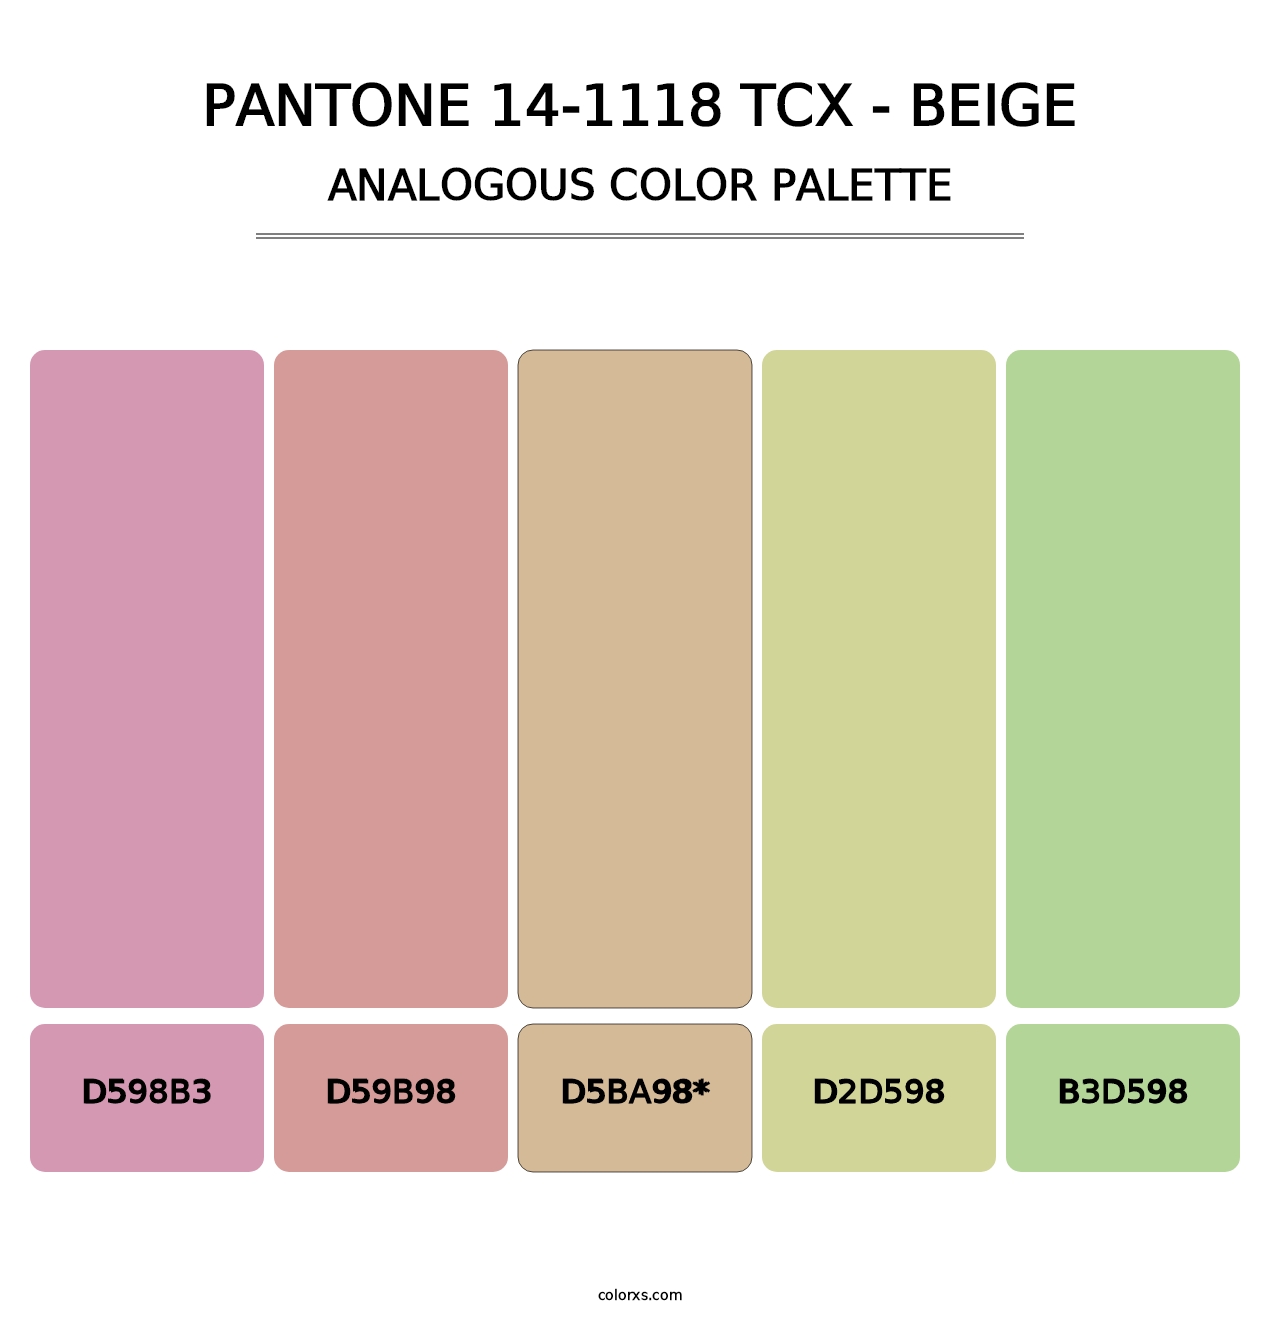 PANTONE 14-1118 TCX - Beige - Analogous Color Palette